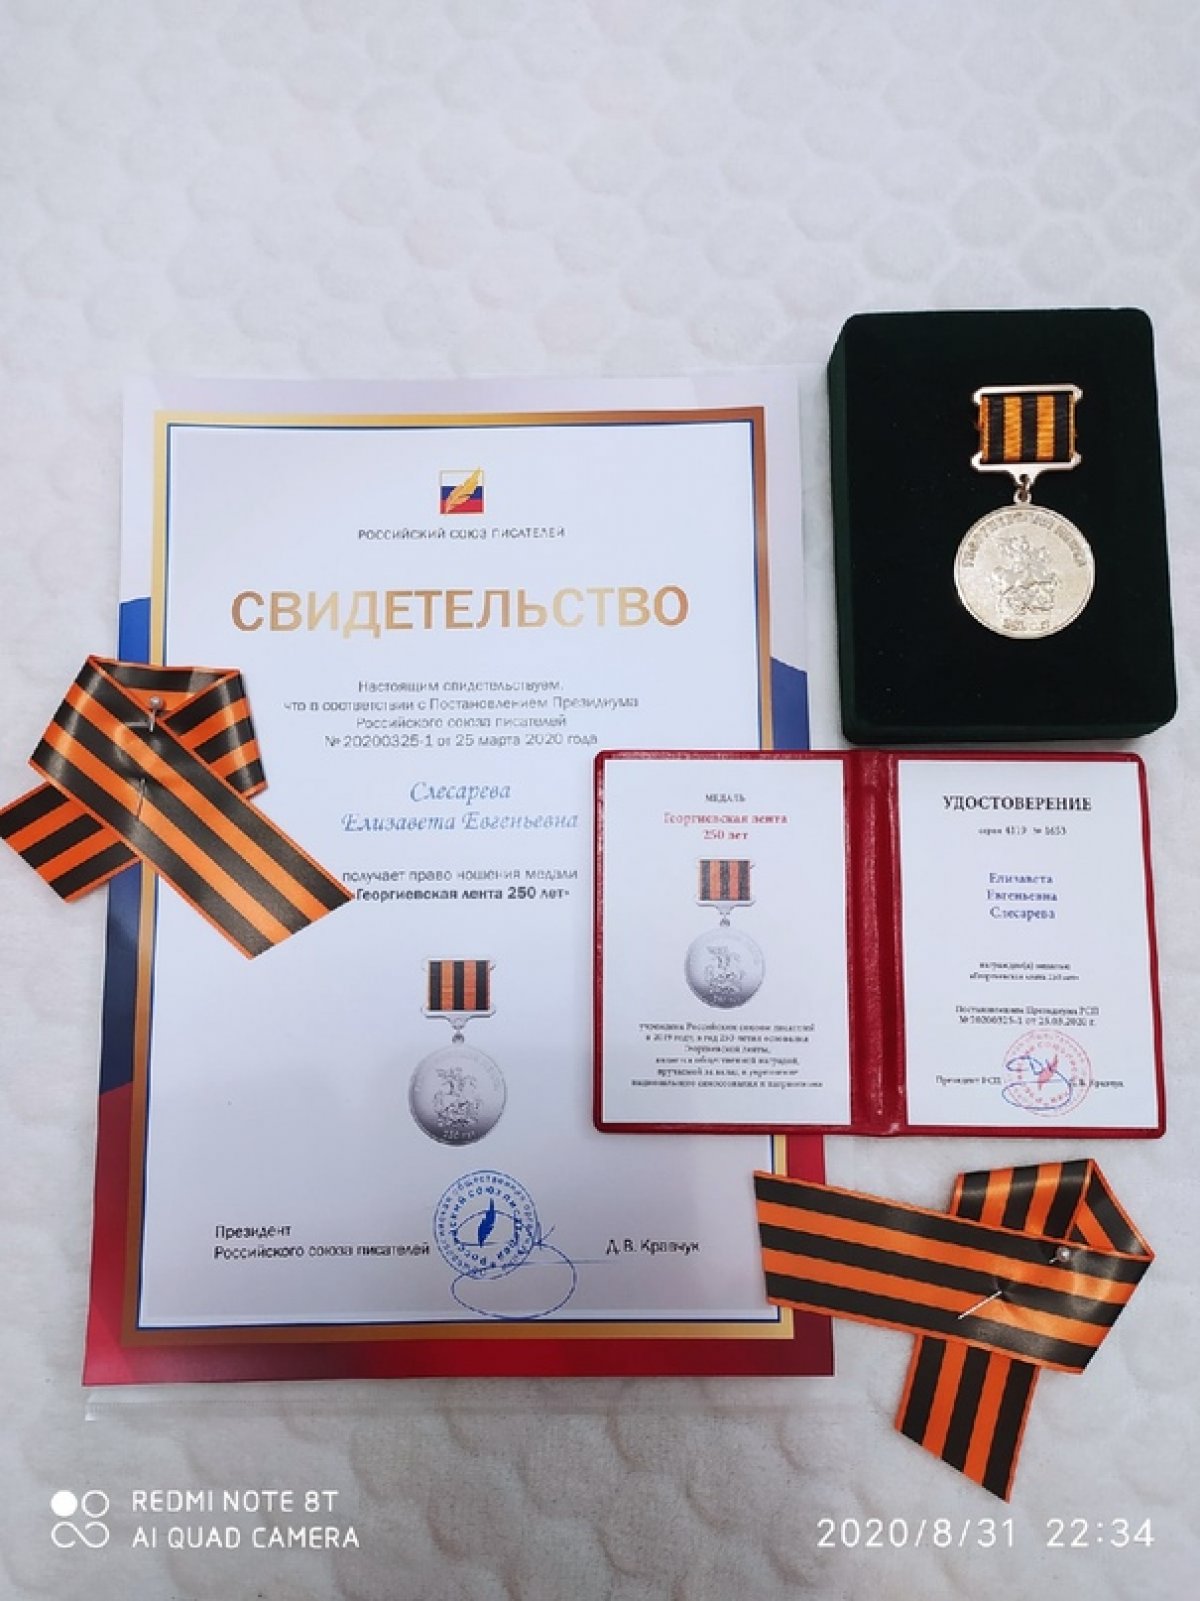 👩‍🦰Студентка ВИТИ НИЯУ МИФИ Елизавета Слесарева получила сразу две литературные награды в Большом концертном зале Правительства Москвы: